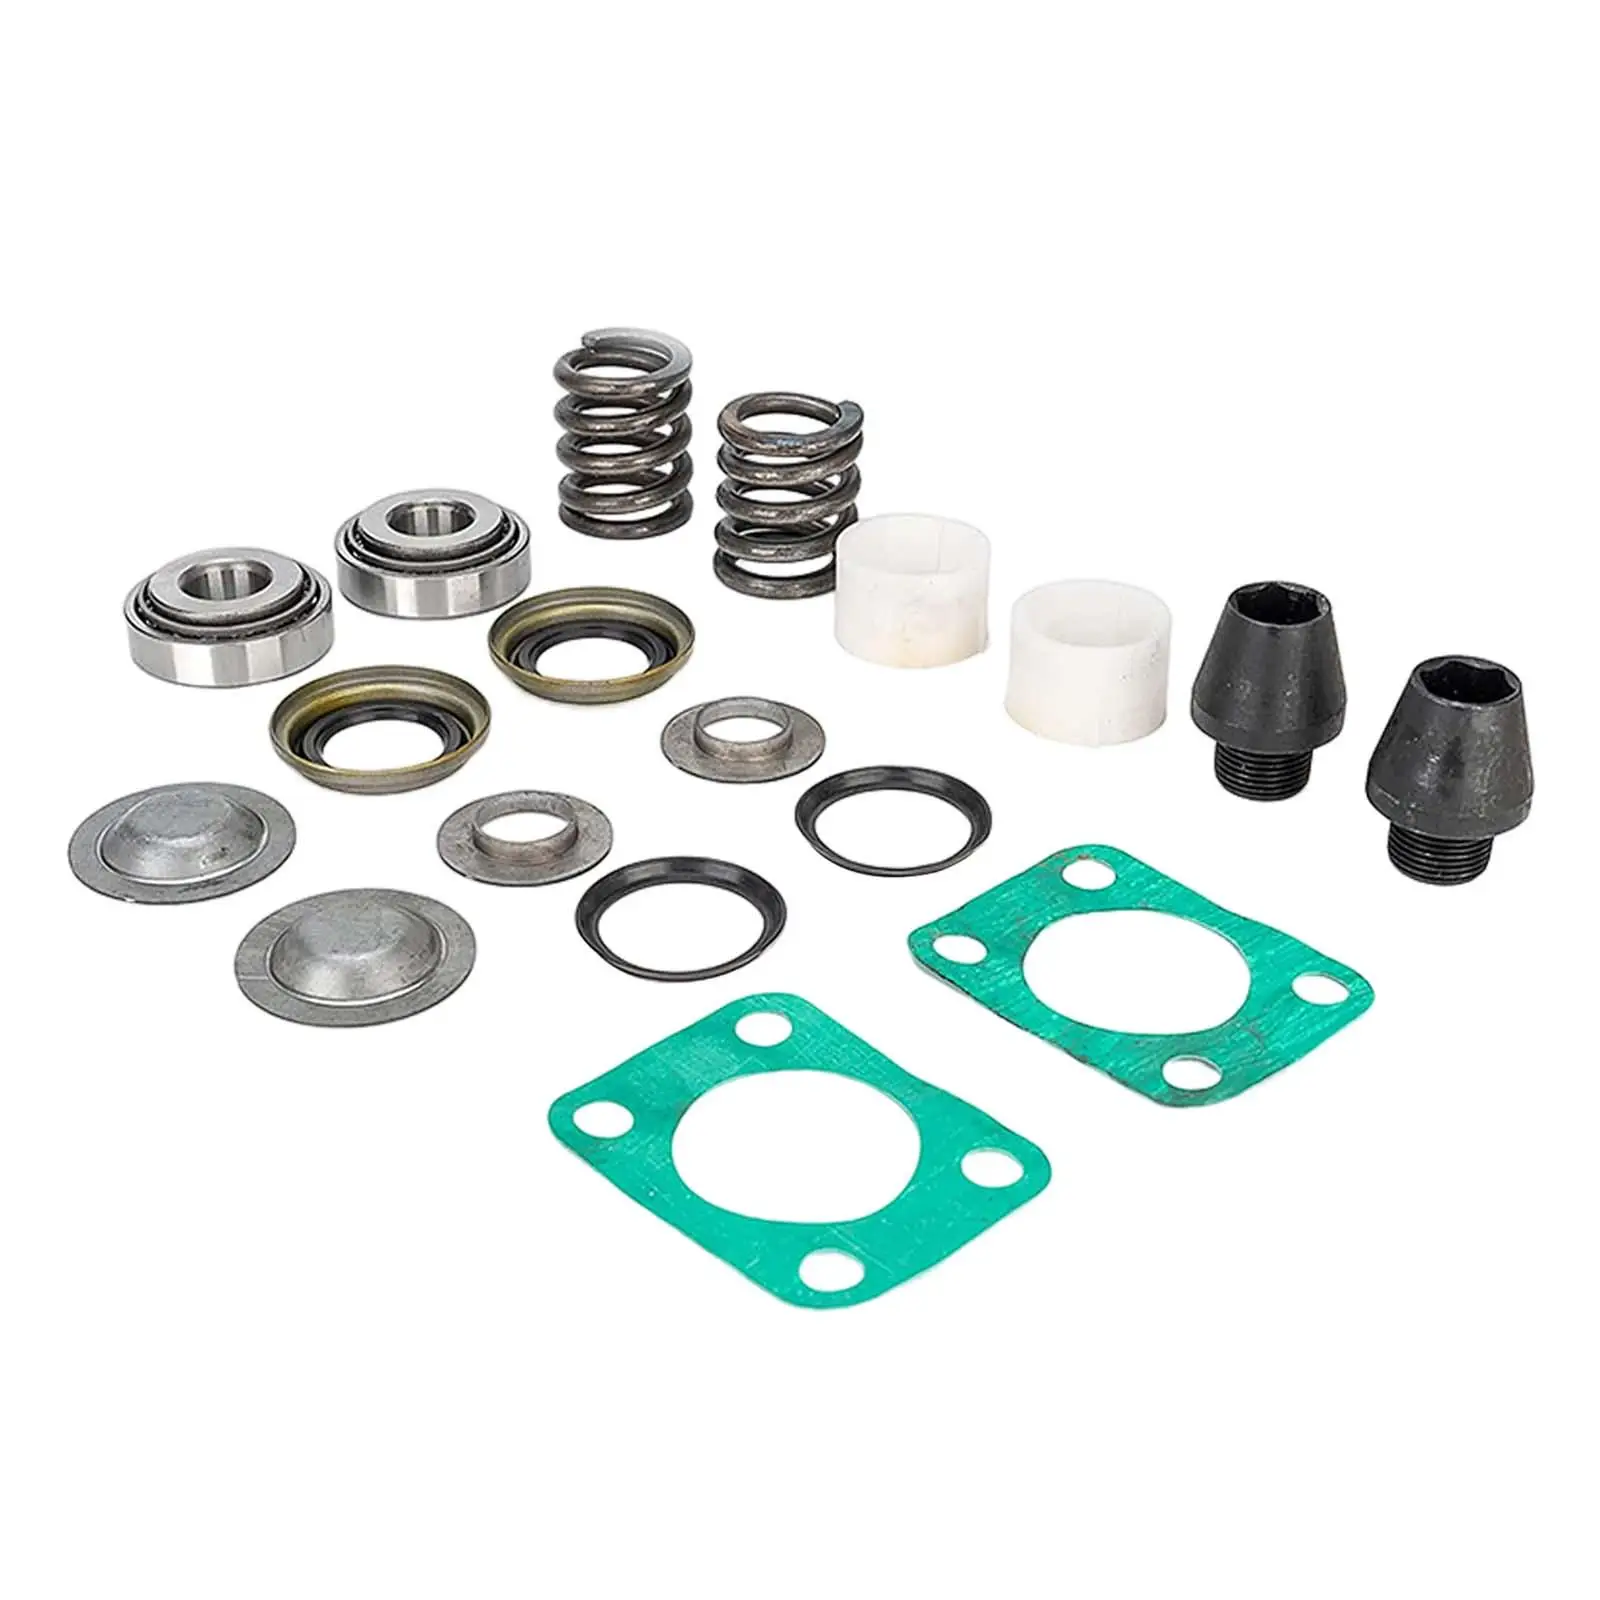 Kingpin Bearing Seal Rebuild Kit 706395x Replace Parts 620180 41886 37300 for GM